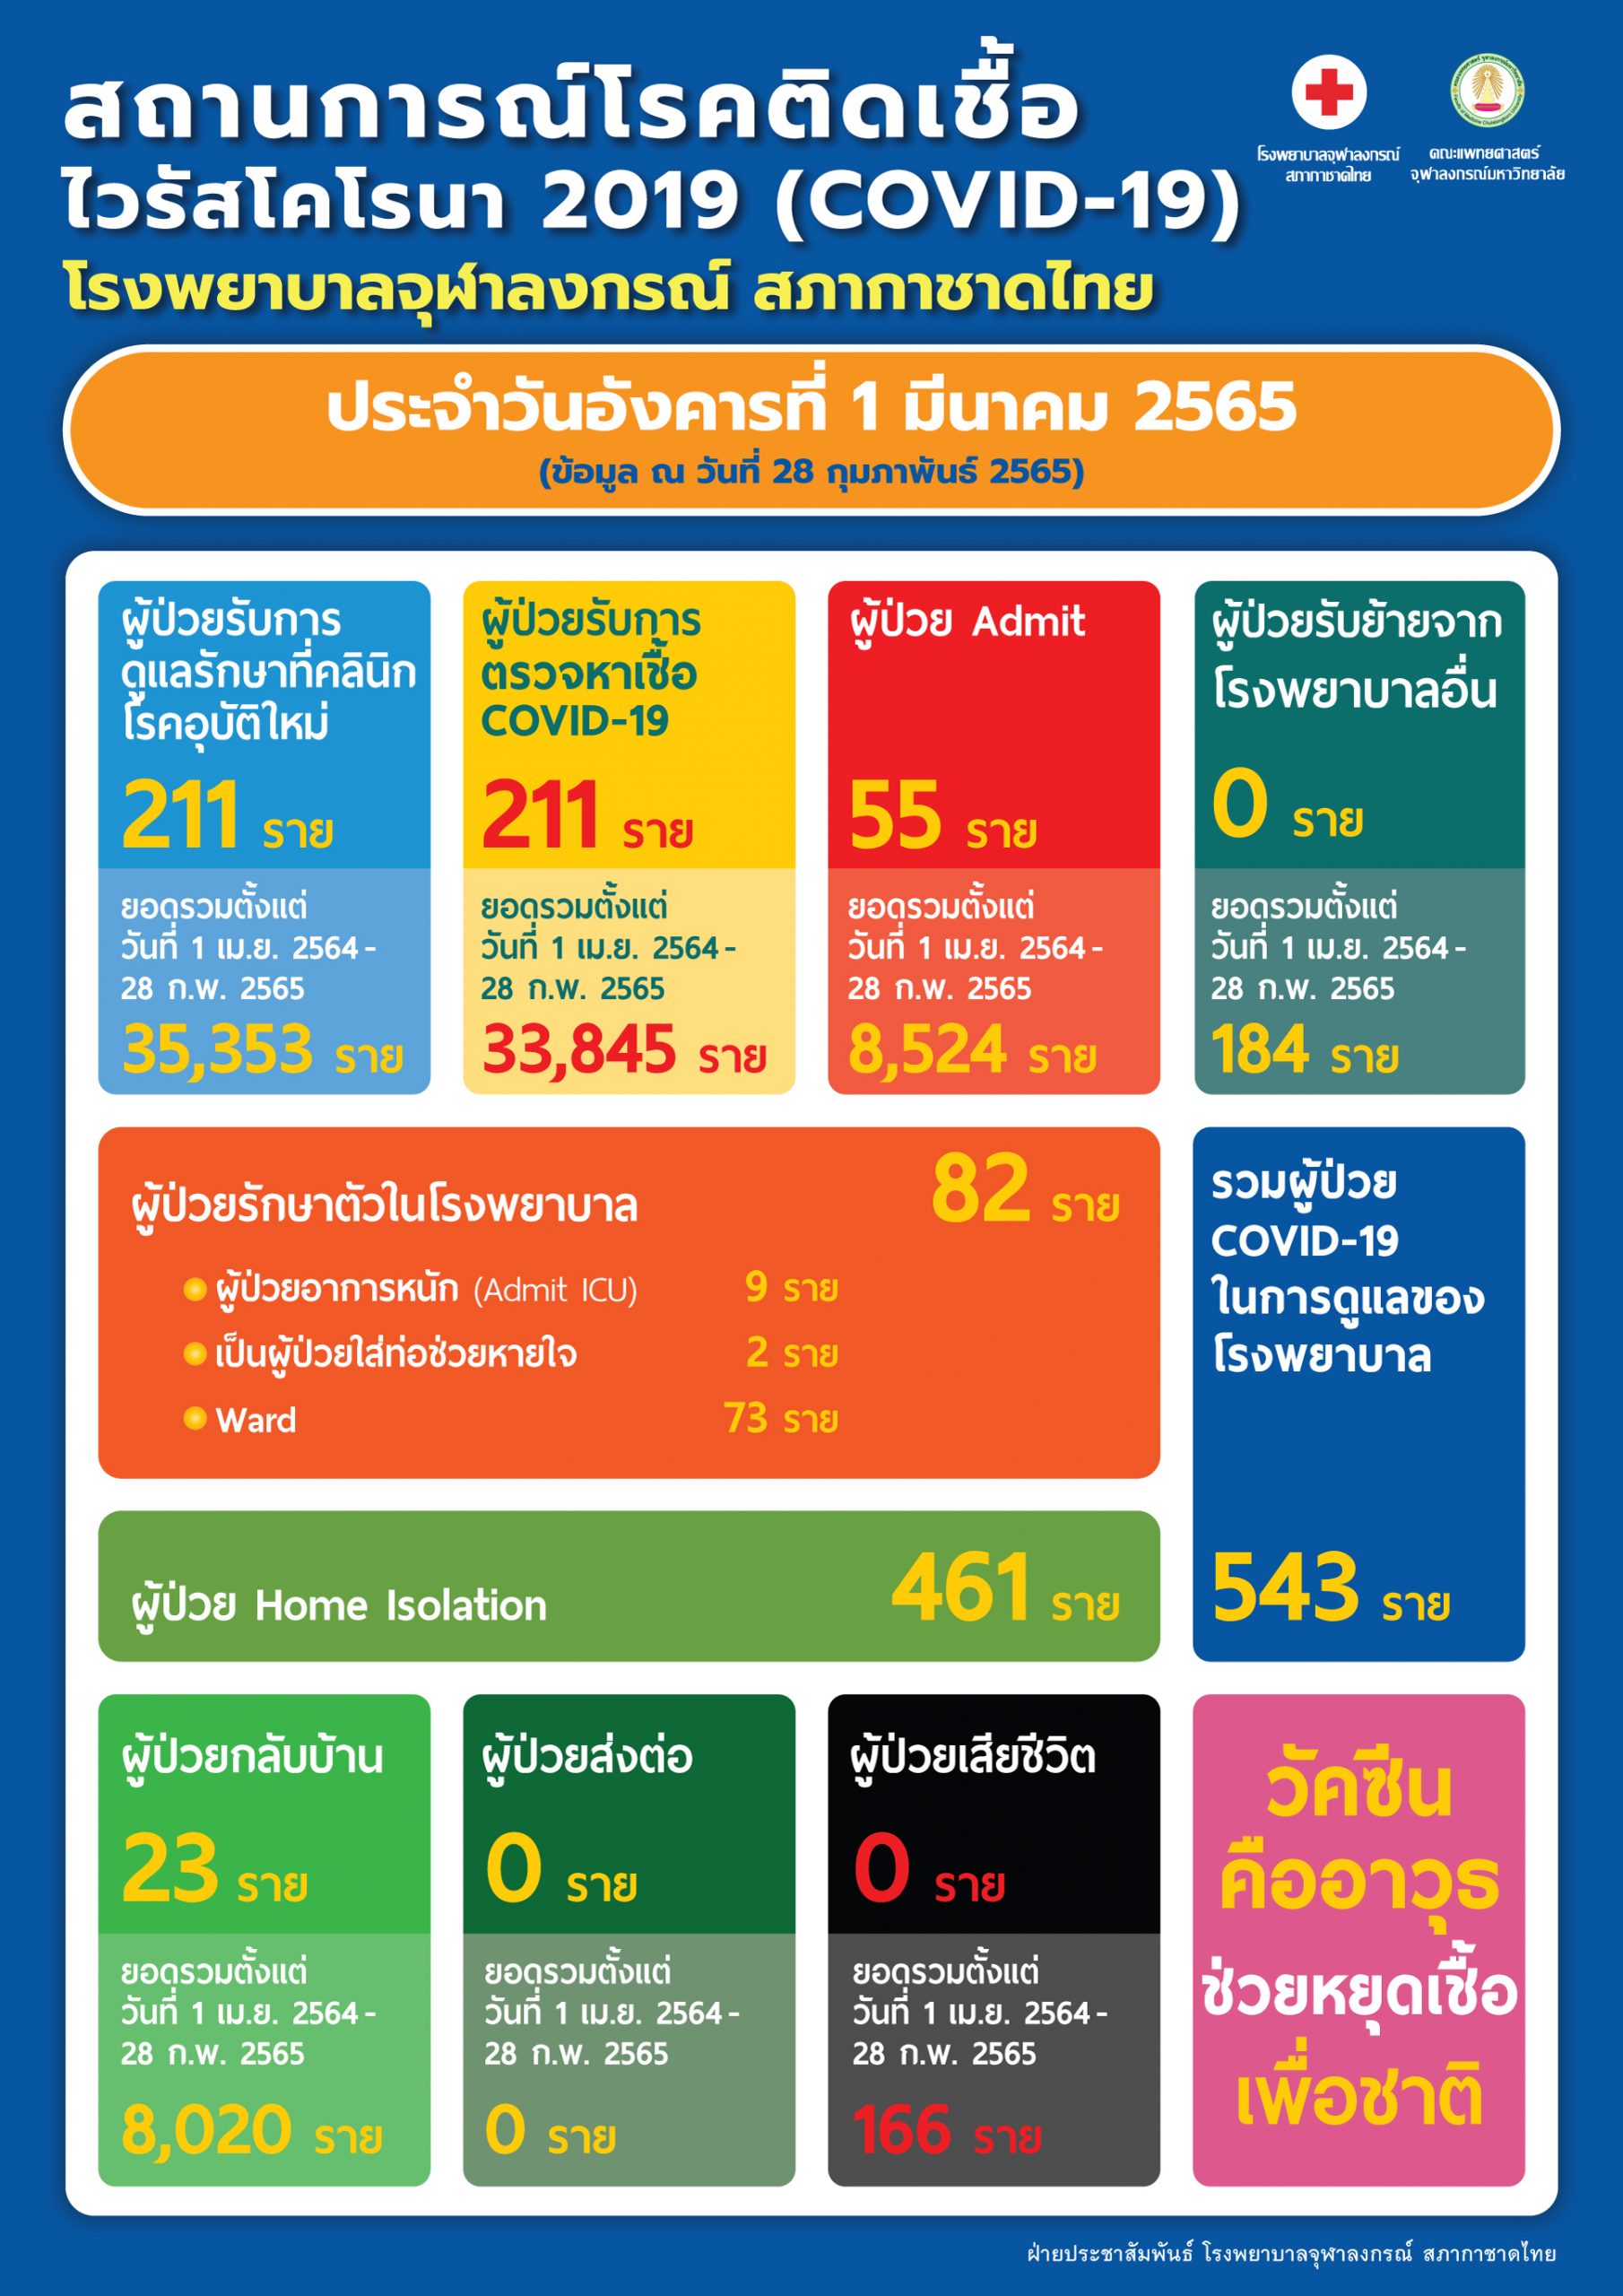 สถานการณ์โรคติดเชื้อไวรัสโคโรนา 2019 (COVID-19) โรงพยาบาลจุฬาลงกรณ์ สภากาชาดไทย ประจำวันอังคารที่ 1 มีนาคม 2565